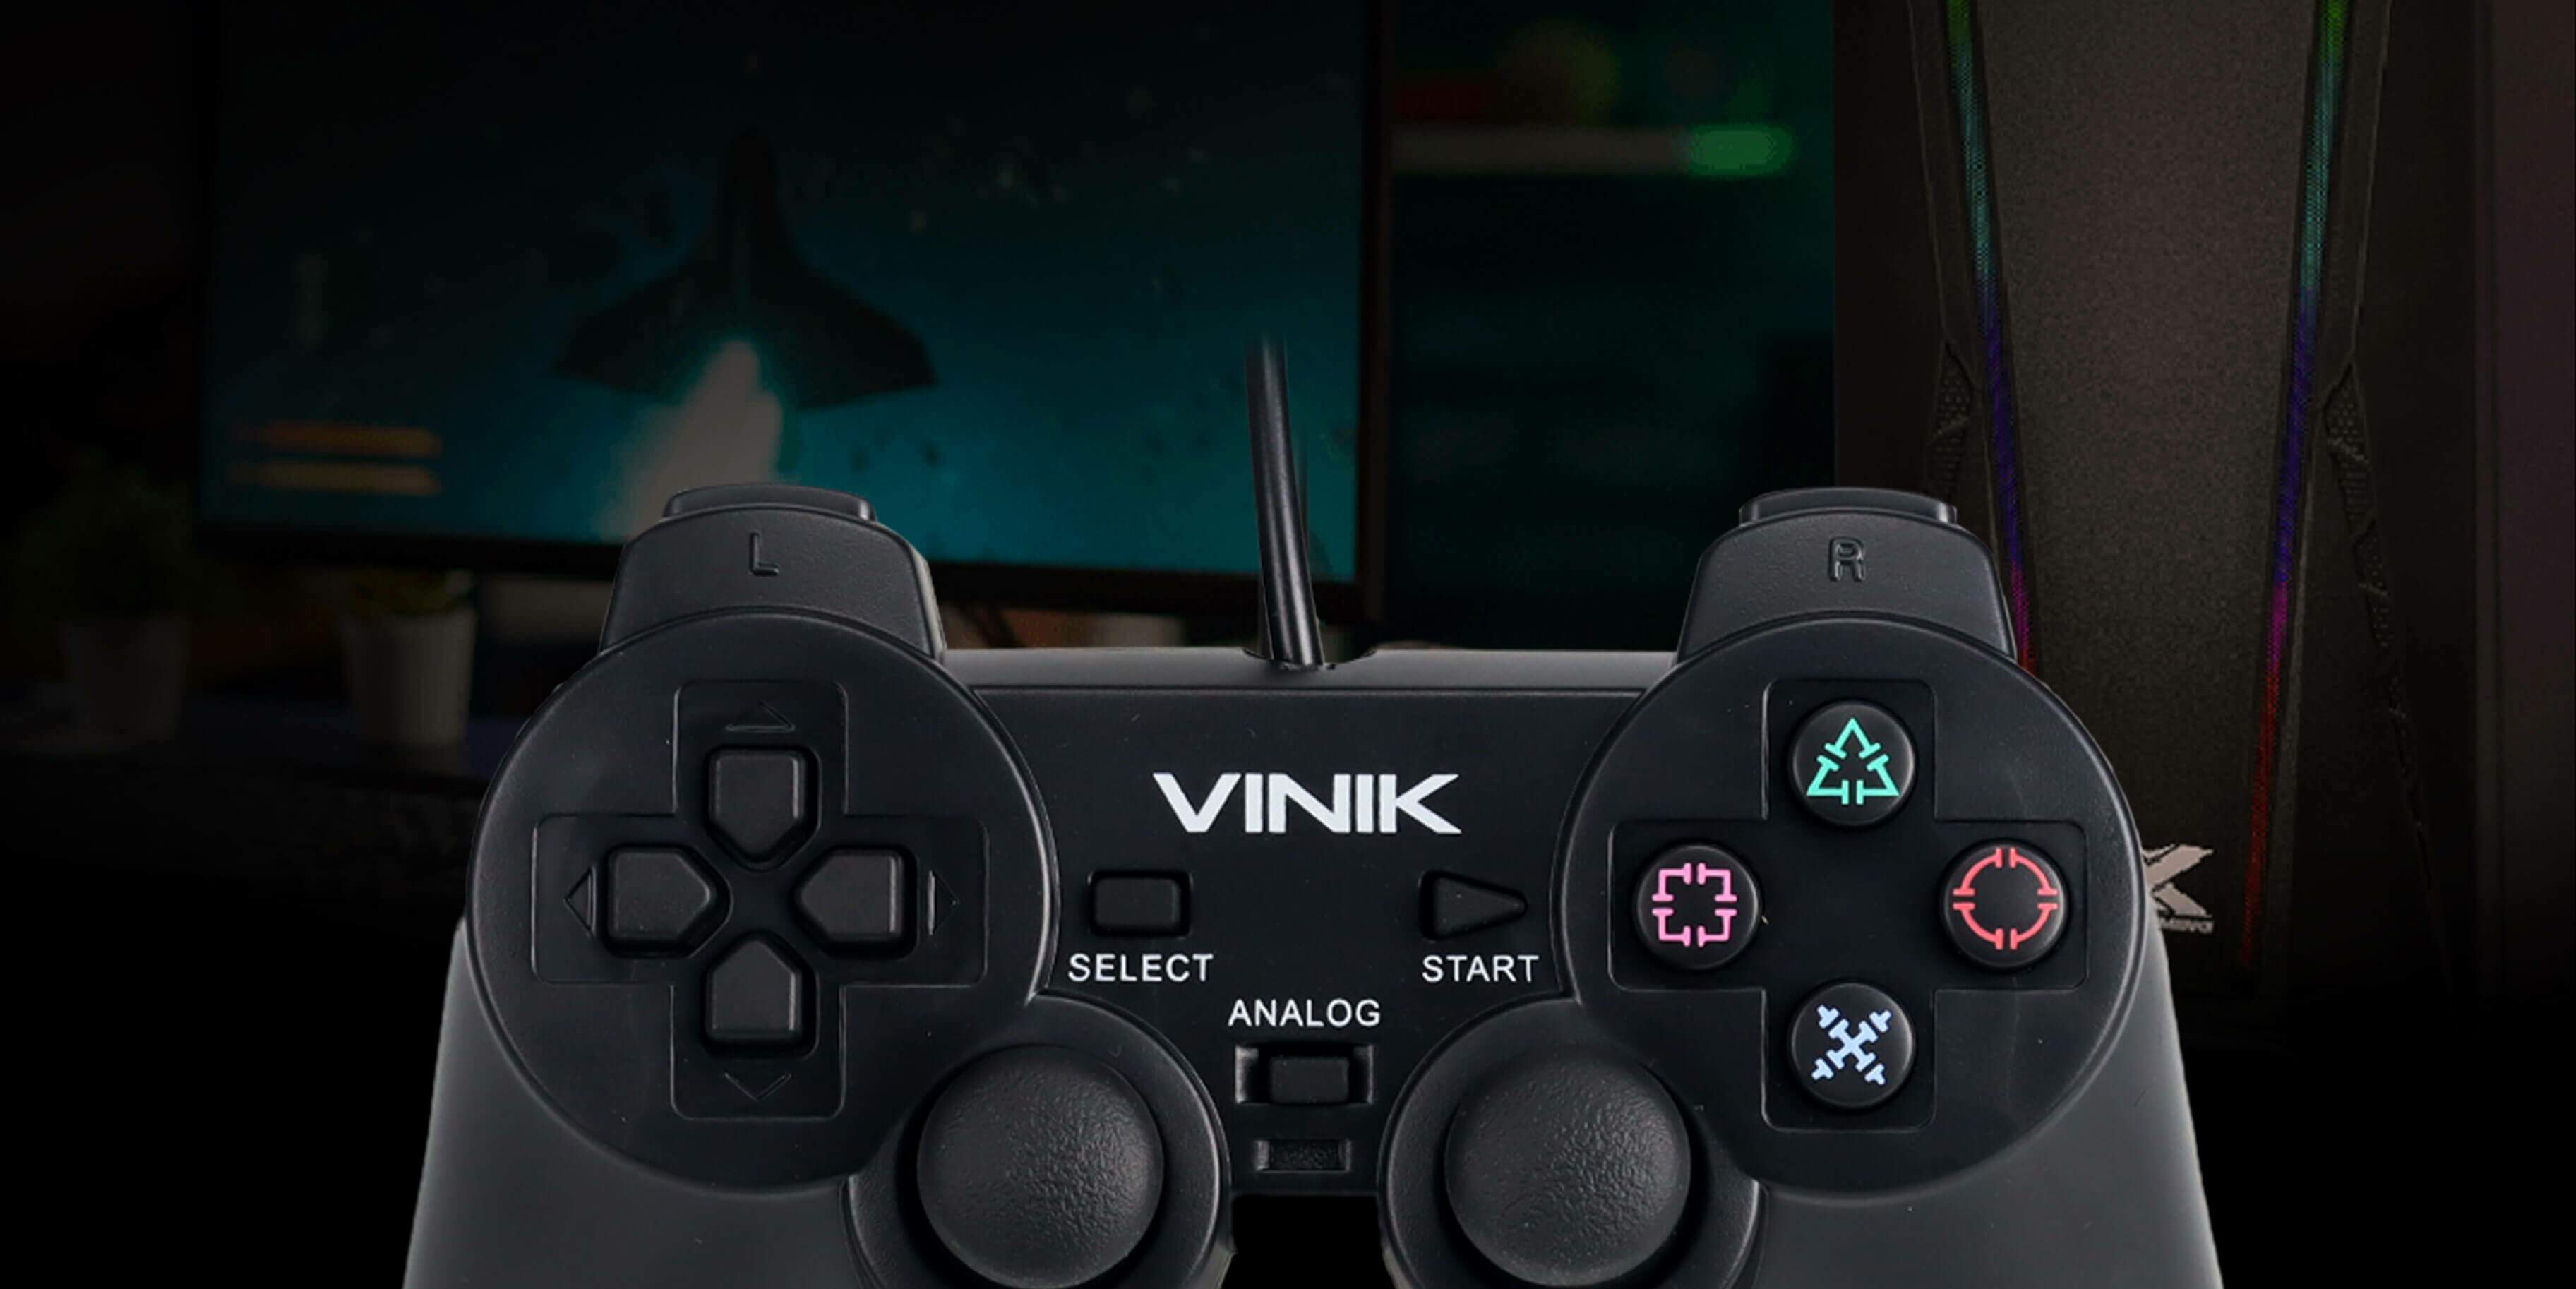 Jogo GTA V PS4 - Usado - Plebeu Games - Tudo para Vídeo Game e Informática